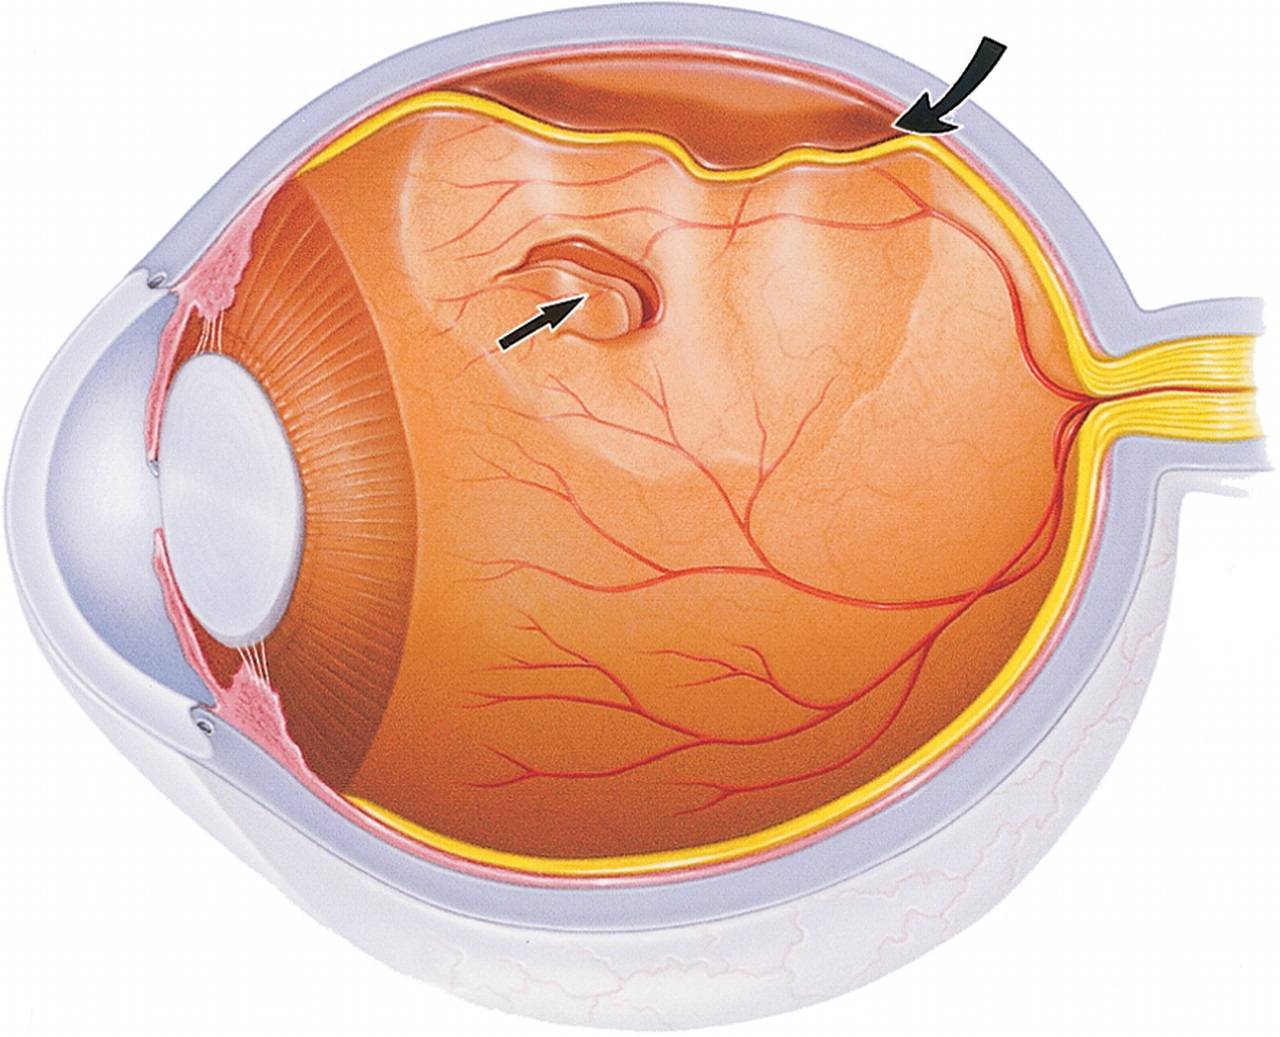 Как лечат отслойку сетчатки глаза?